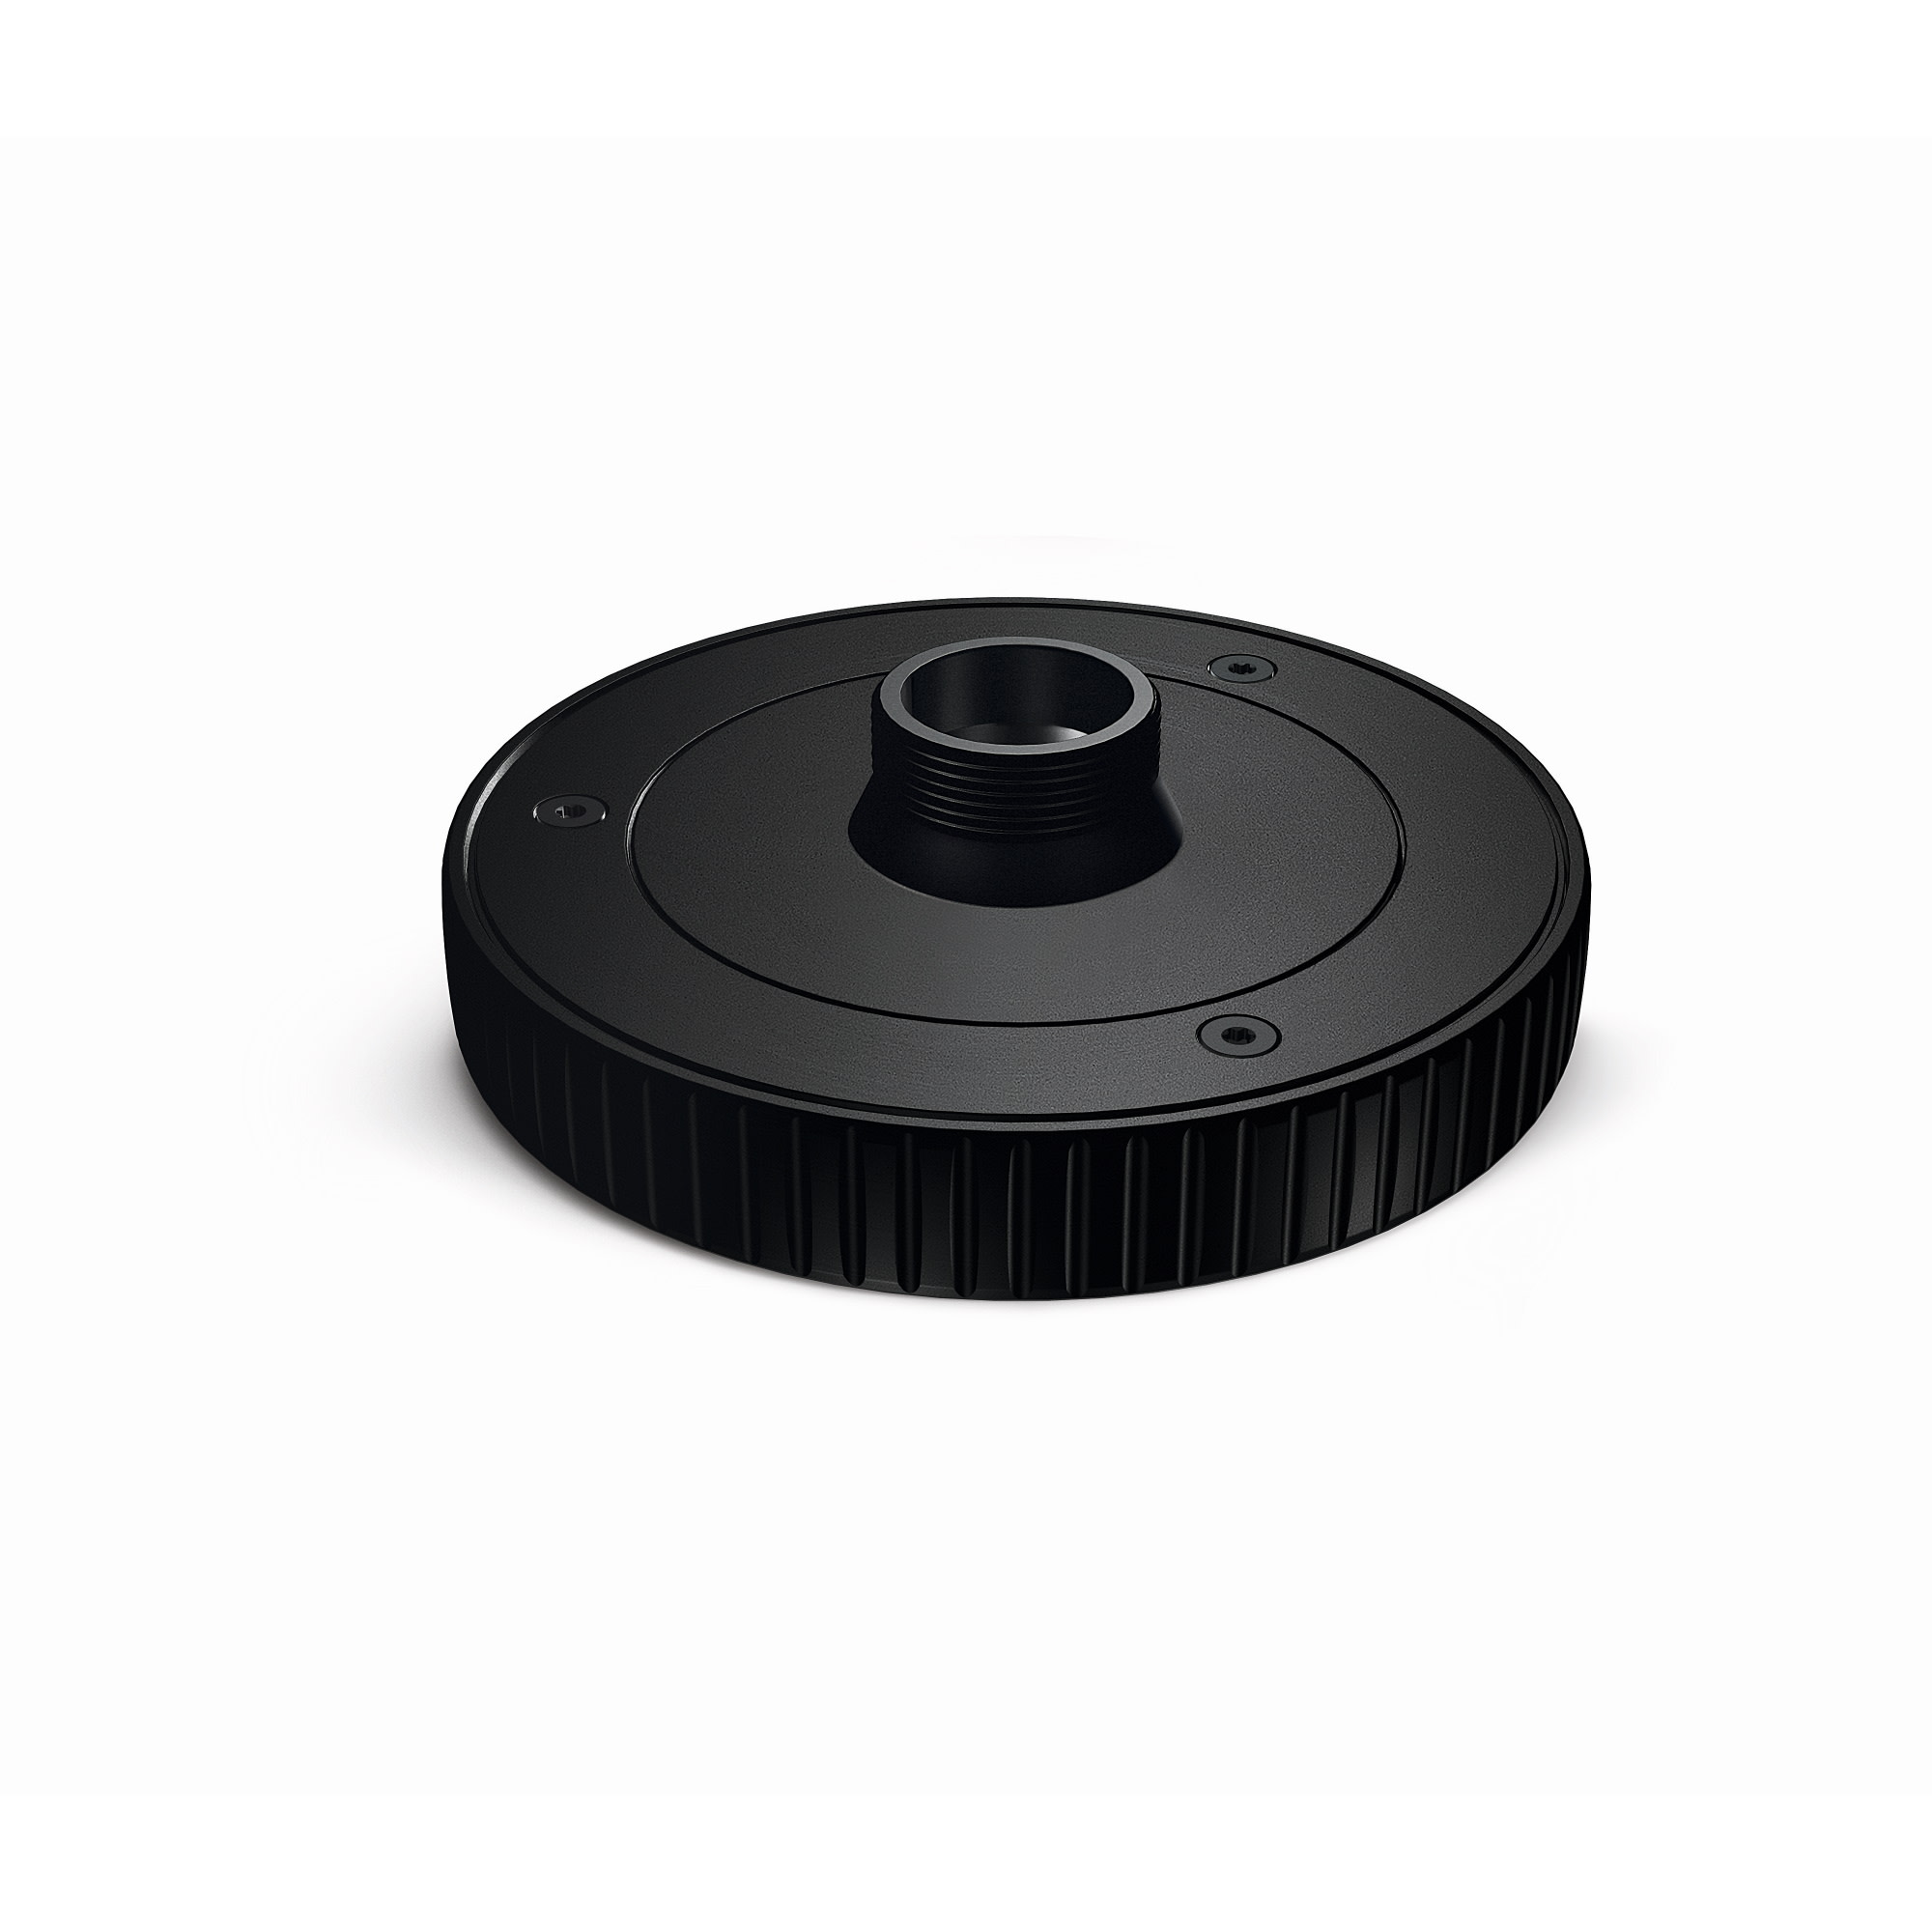 Swarovski AR Adapter Ring For CL Pockets Binoculars Black